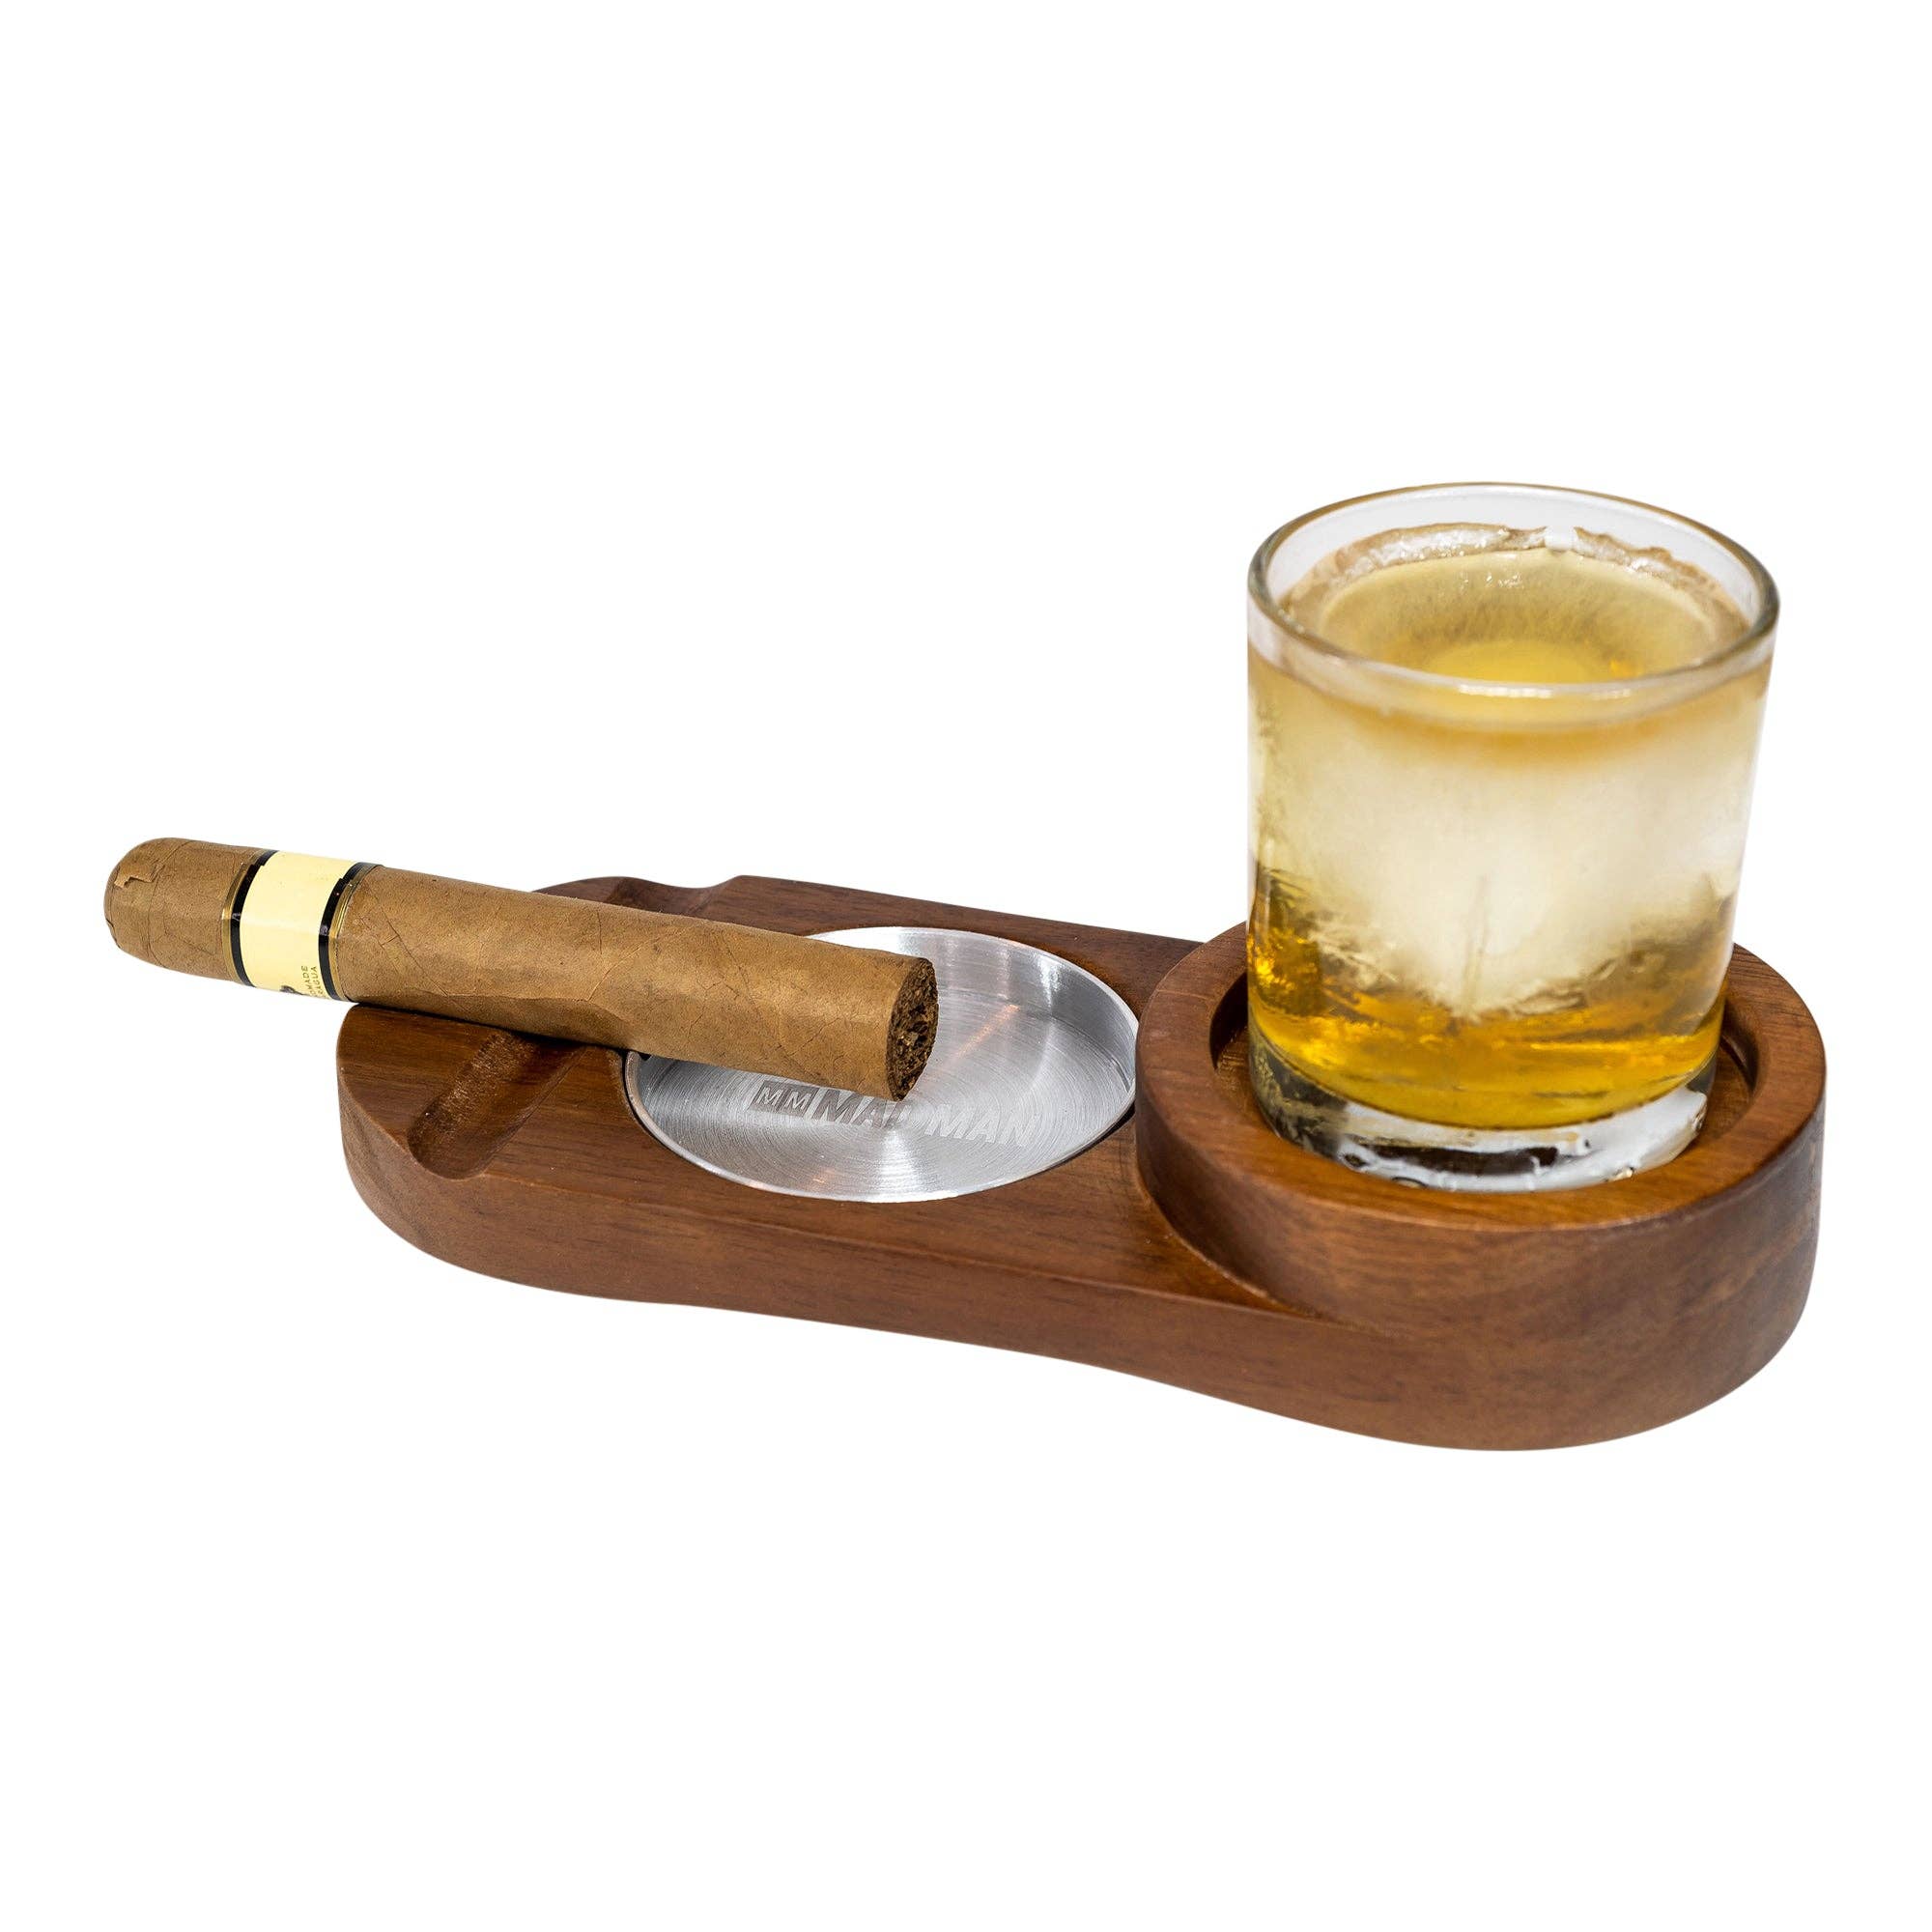 Mad Man - Hardwood Cigar Ashtray & Whiskey Accessory Set